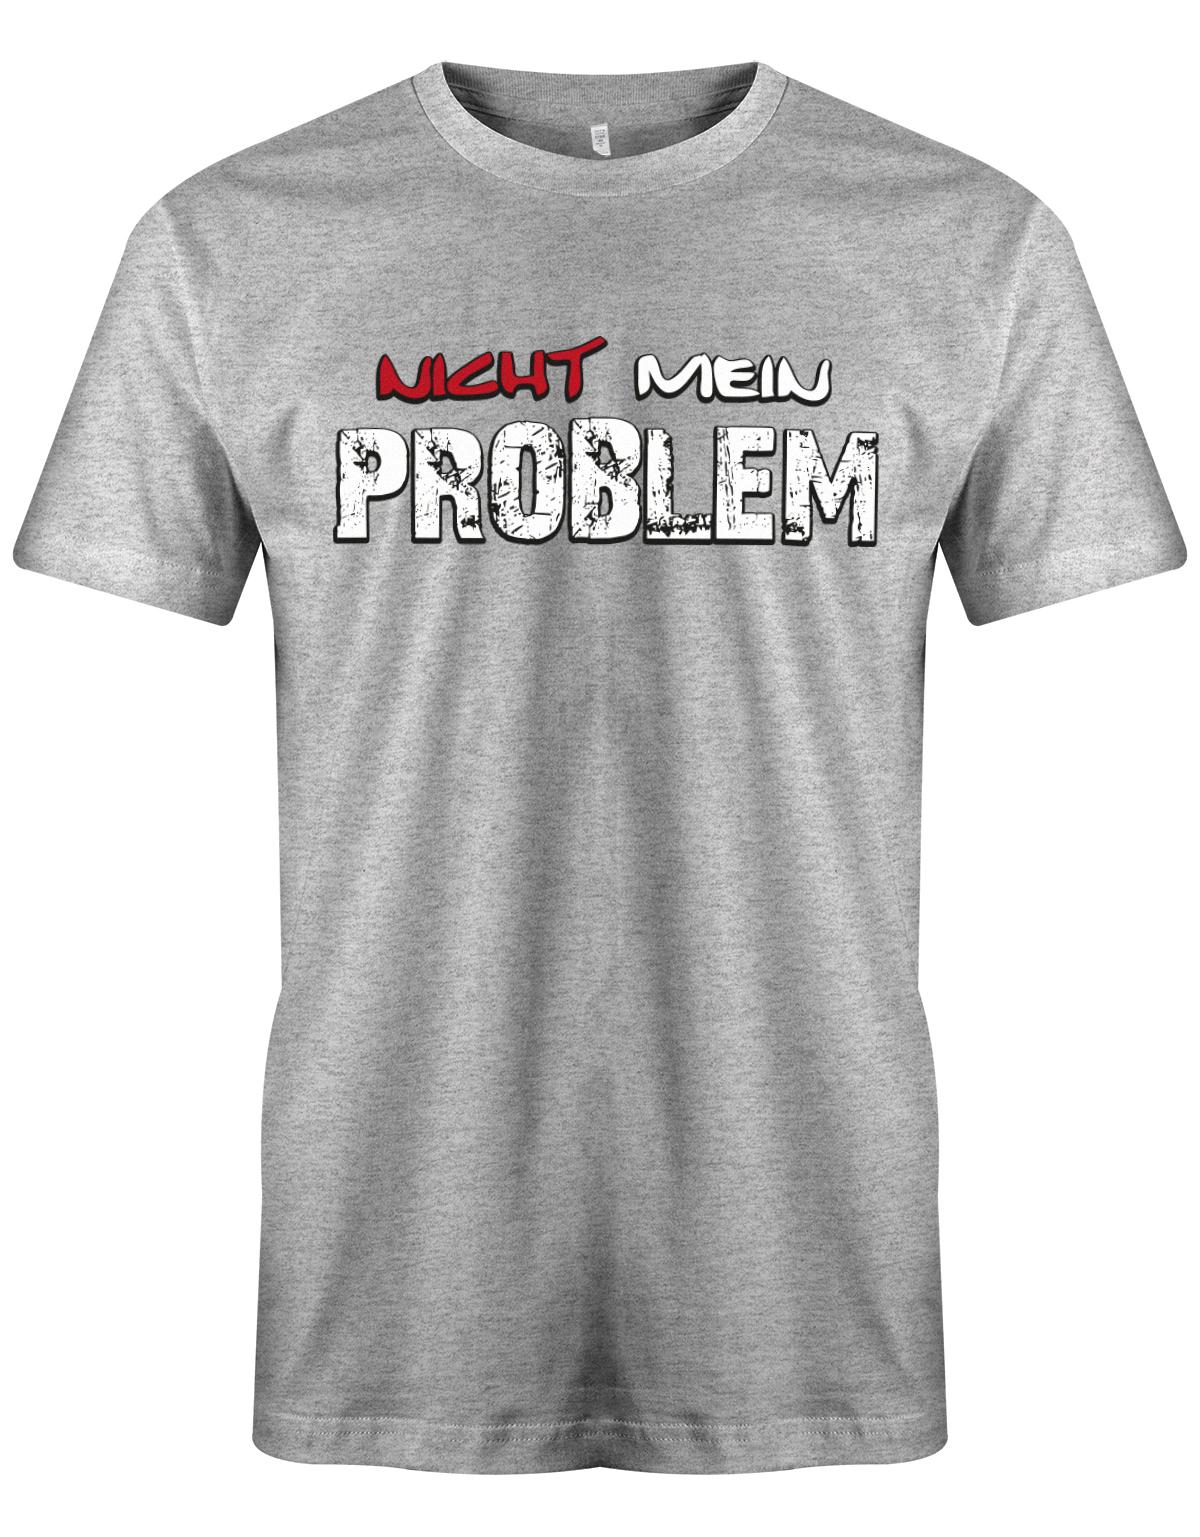 Lustiges Sprüche Shirt - Nicht mein Problem Grau